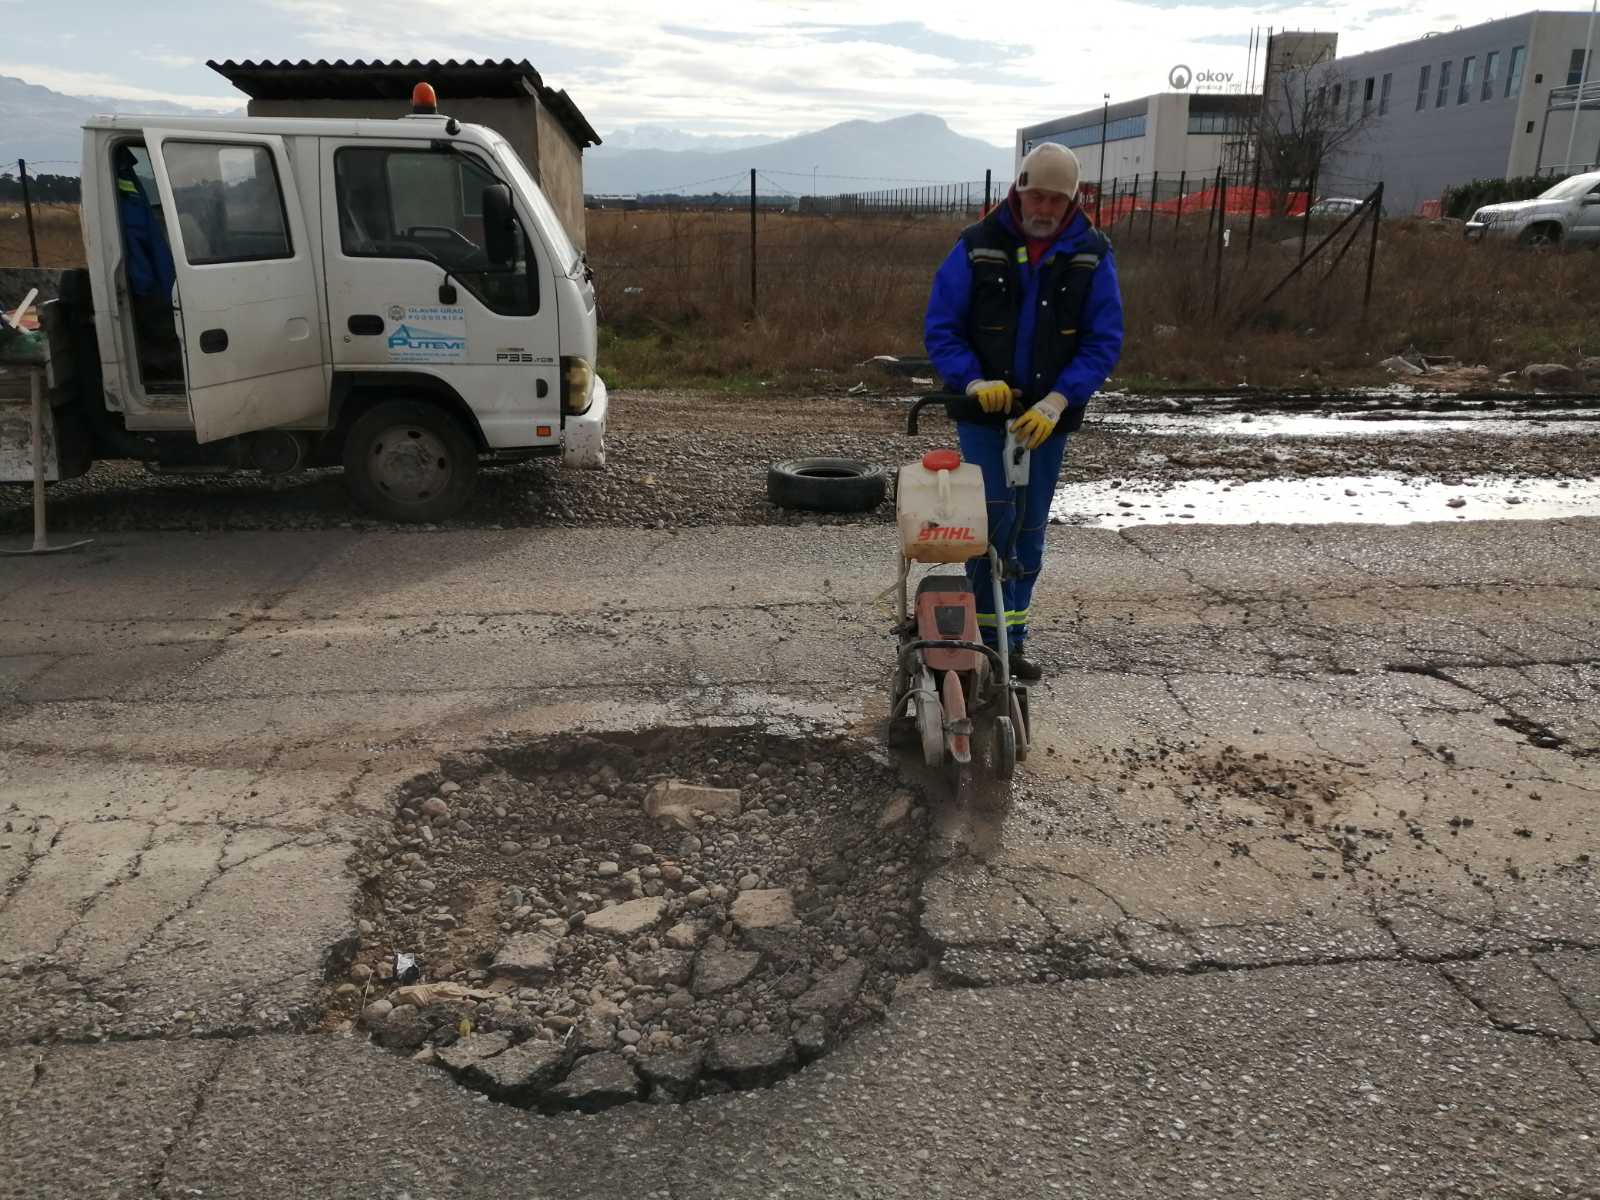 Putevi d.o.o. continue to repair potholes